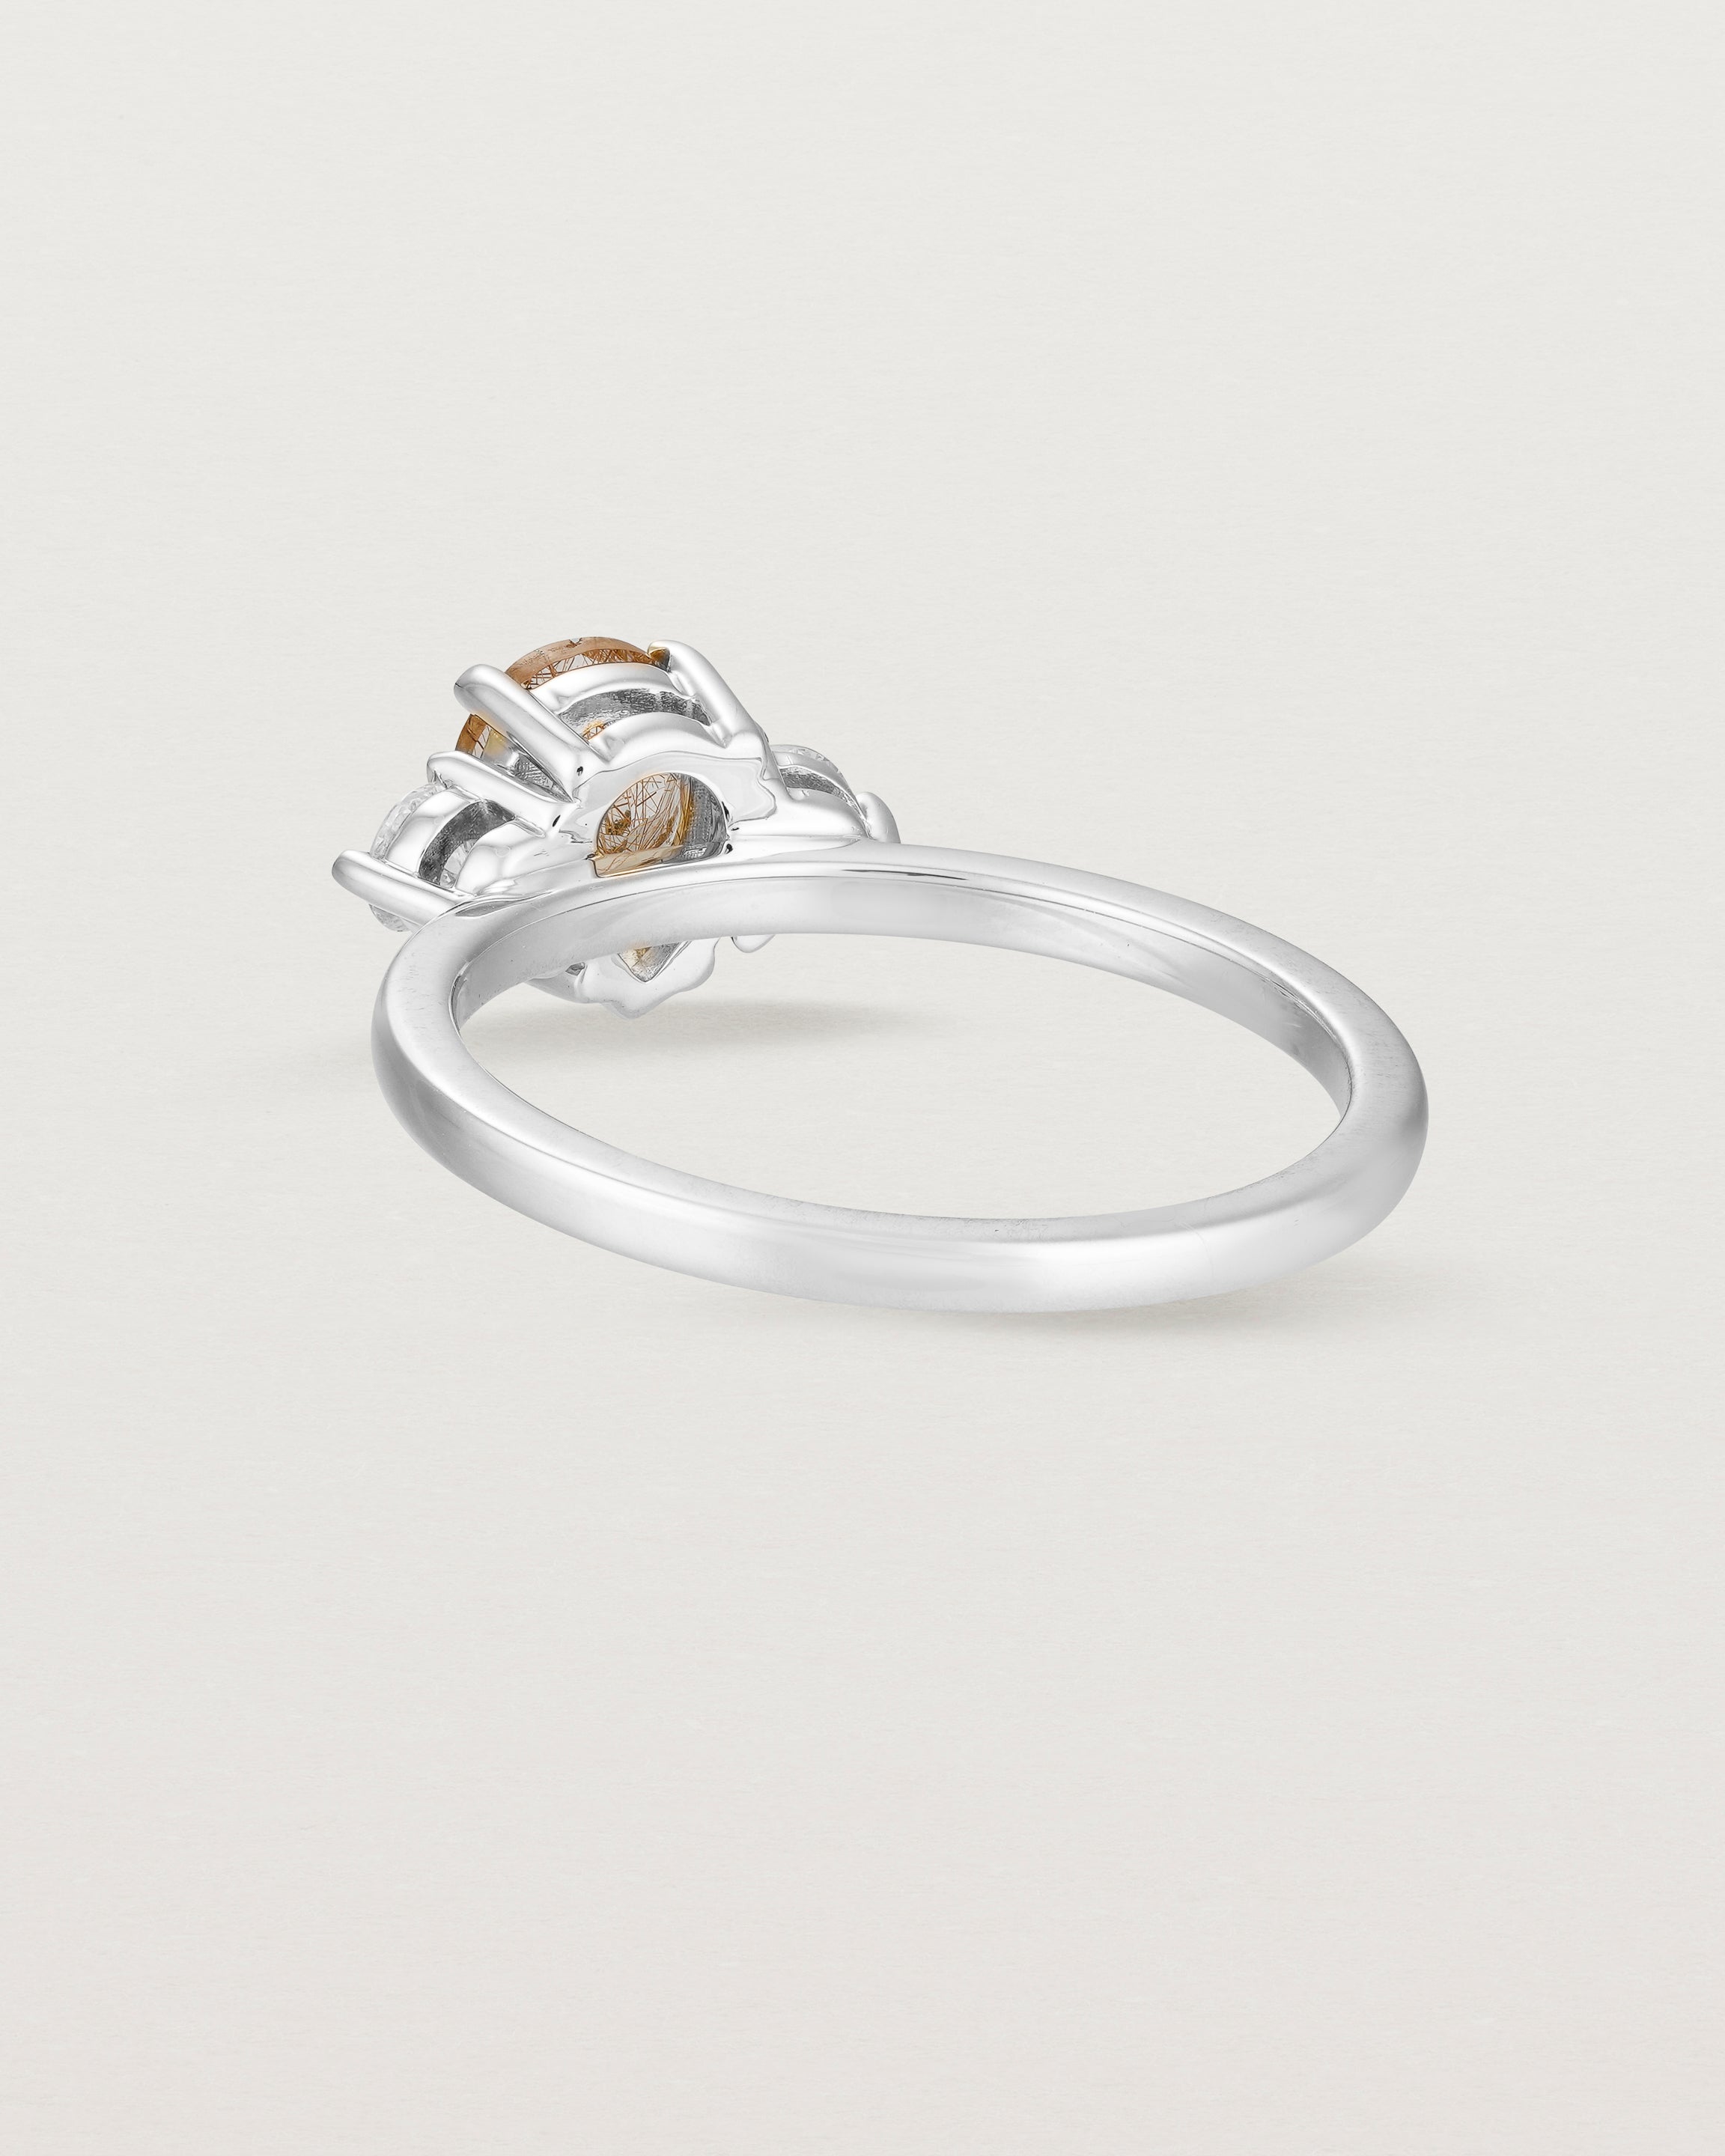 Back view of the Una Pear Trio Ring | Rutilated Quartz & Diamonds | White Gold.